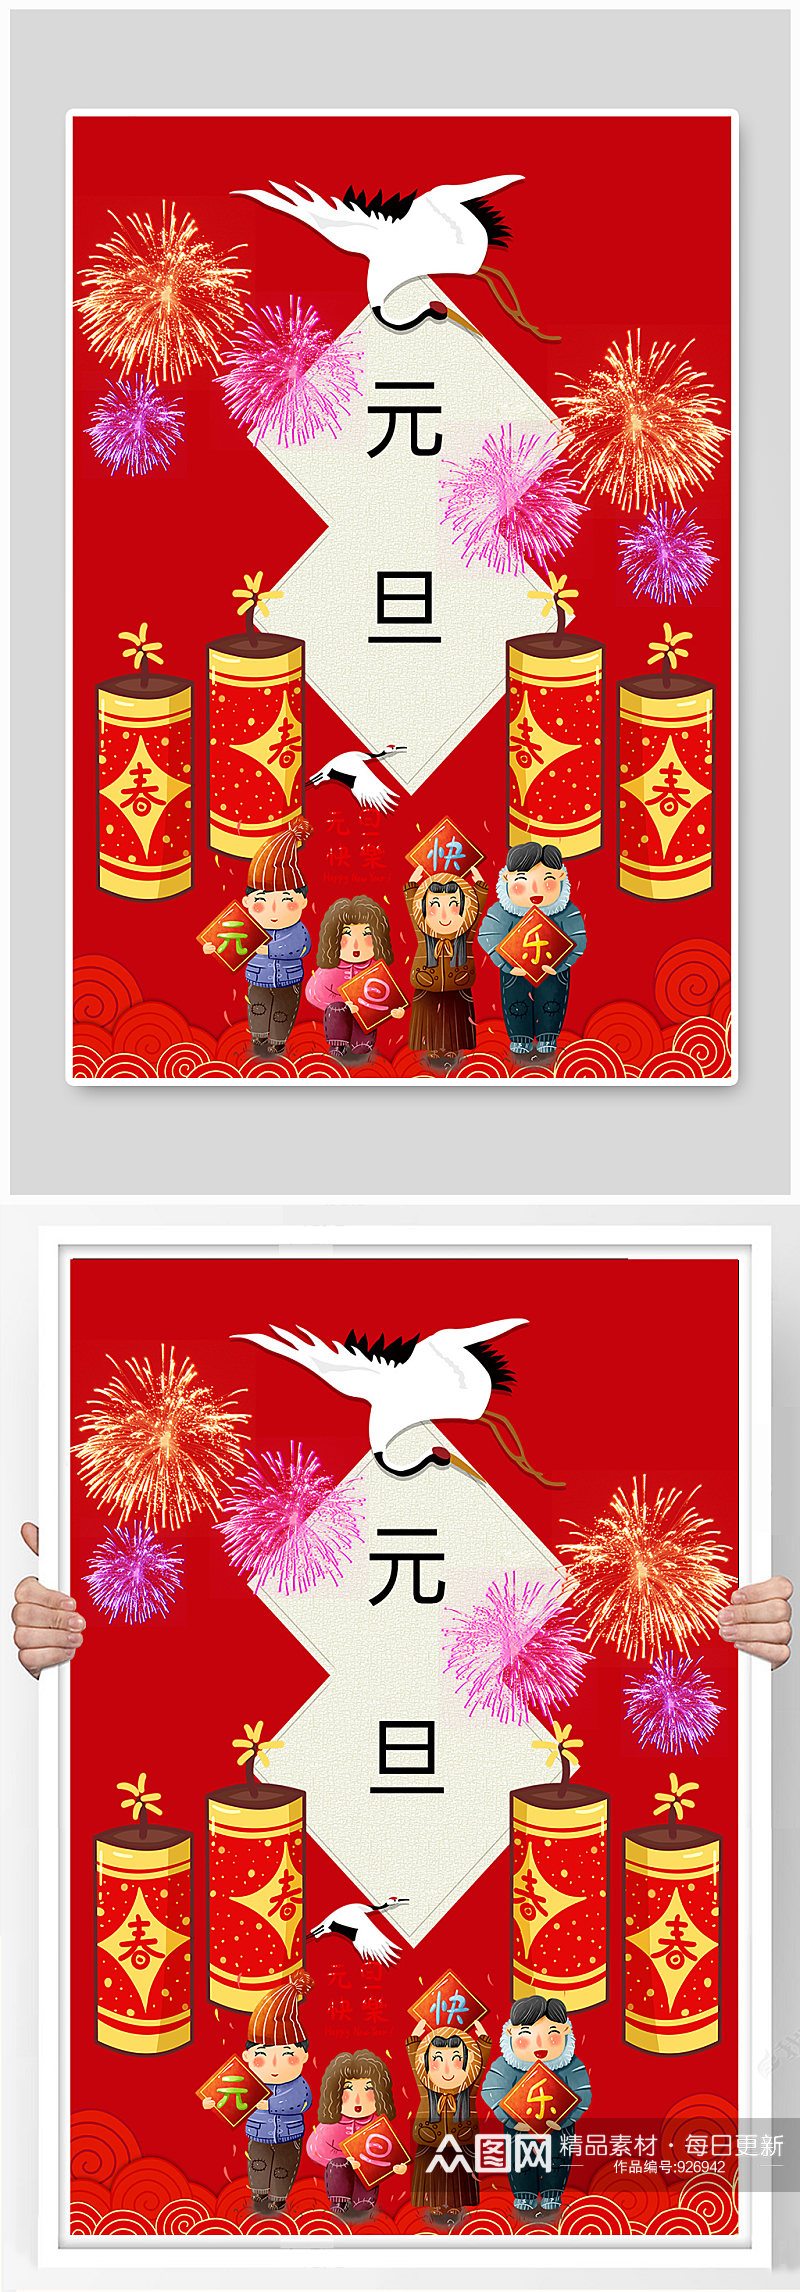 中国传统新年元旦海报素材